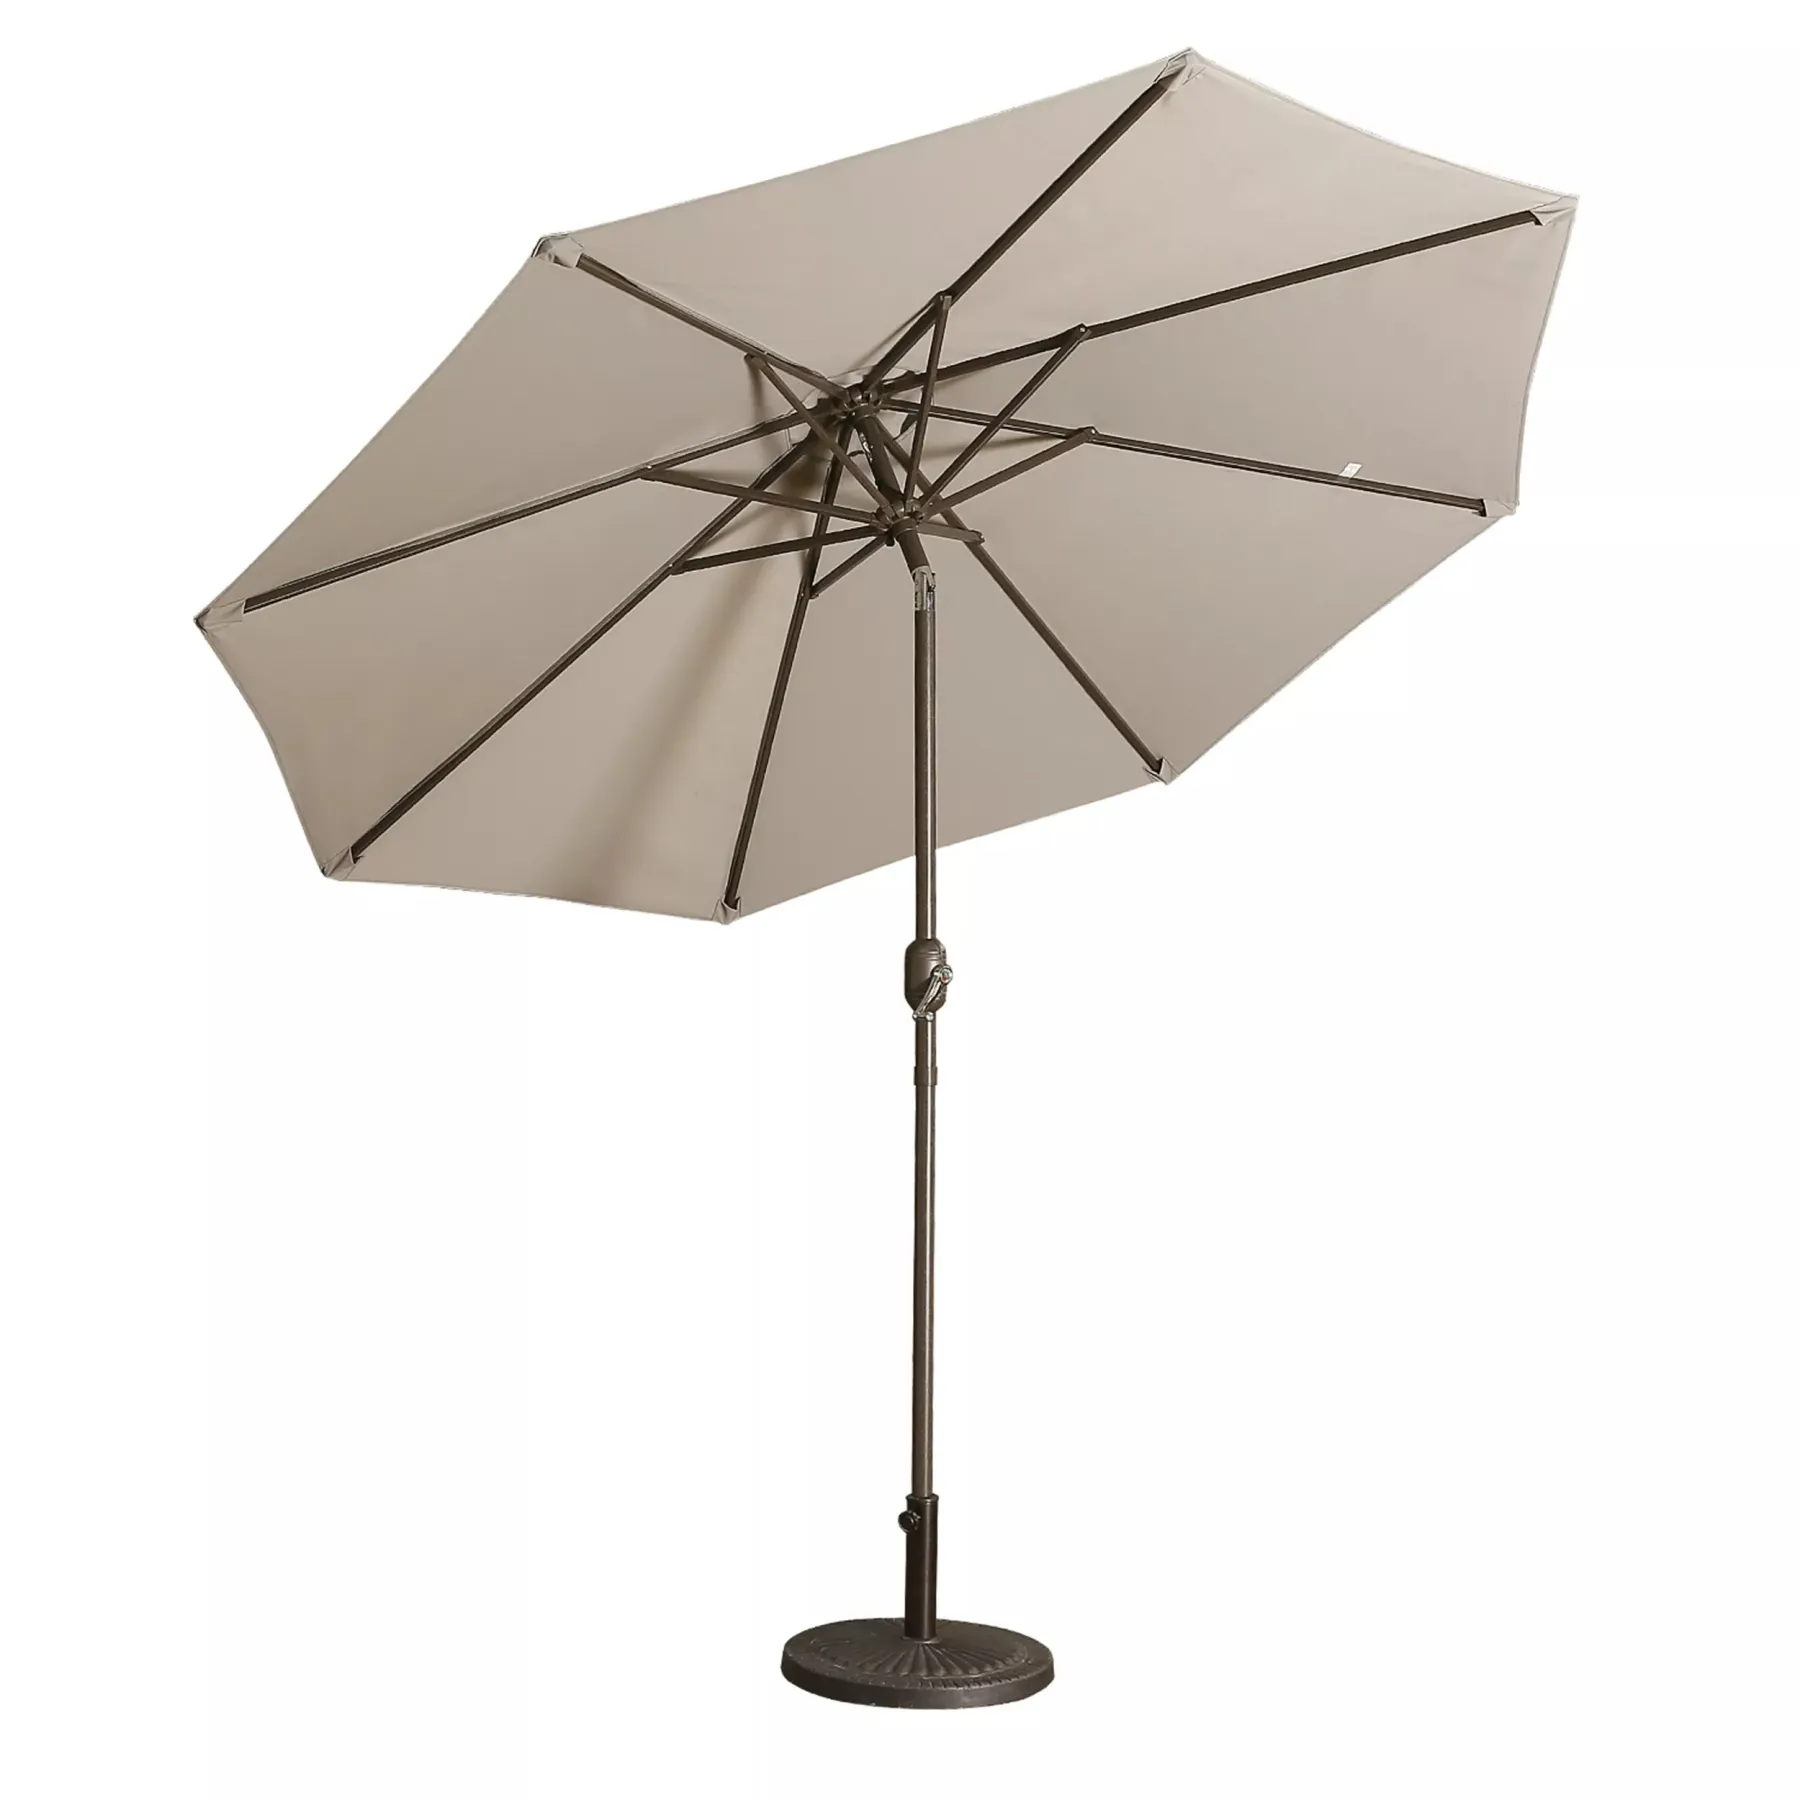 Casainc 9 ft. Alum Patio Umbrella in Gray